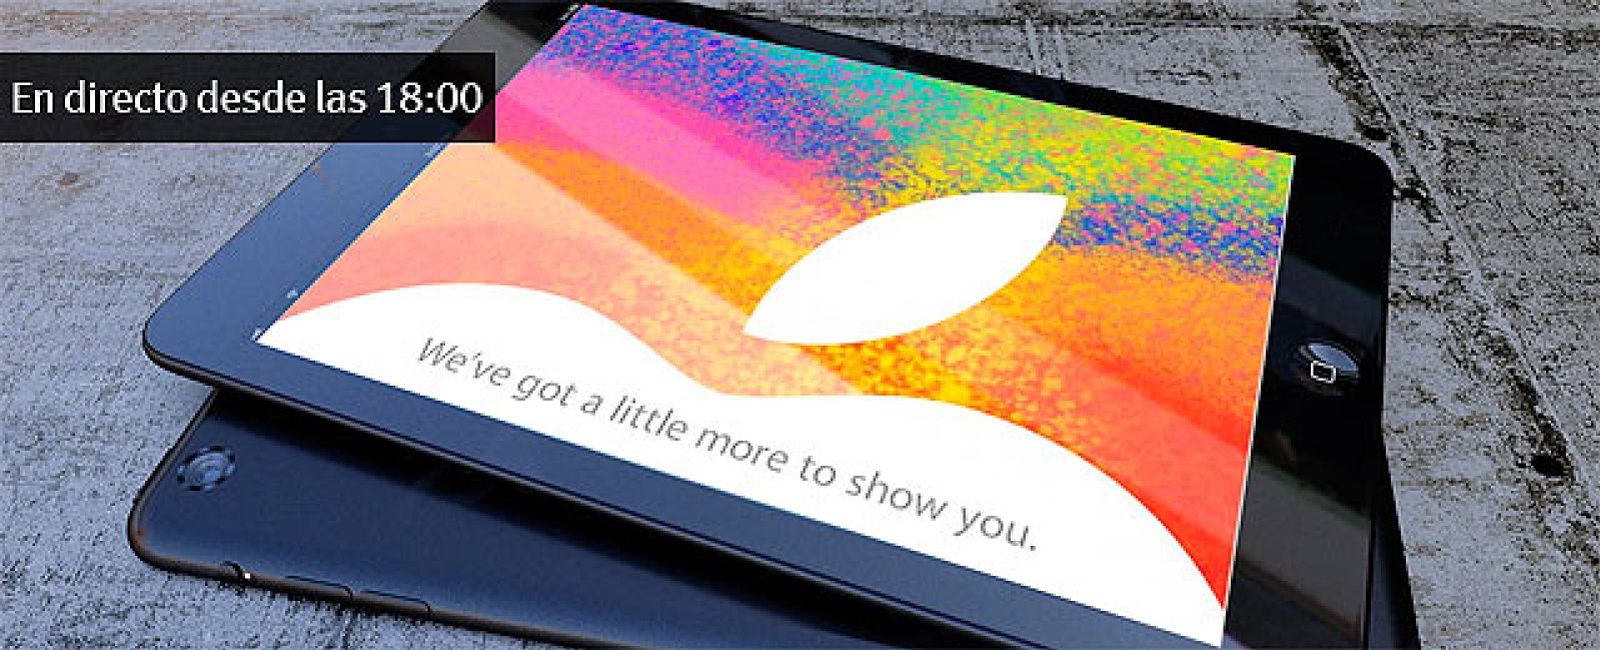 Foto: En directo: Presentación del iPad mini de Apple